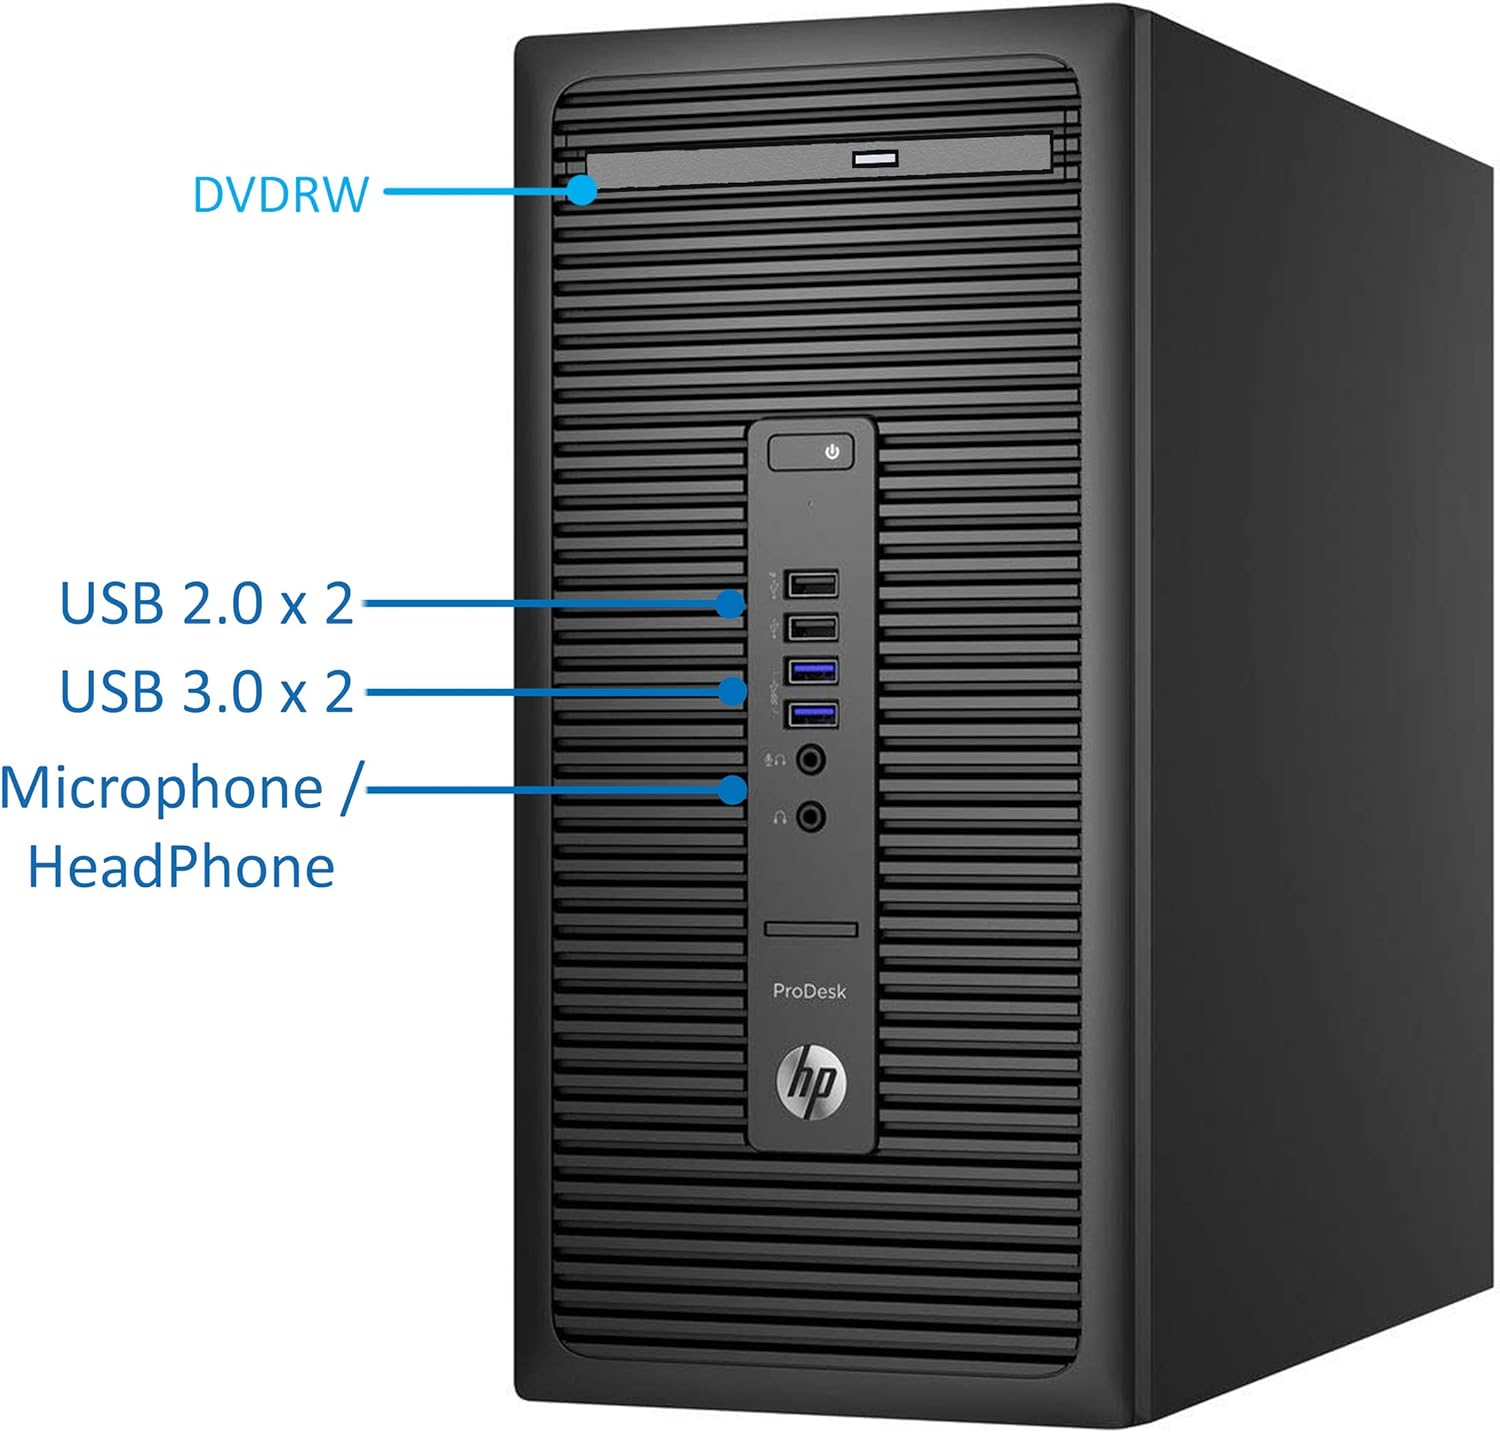 HP 600 G2 ProDesk Mini-Tower PC, Intel Quad-Core i7-6700 Upto 4.0GHz, 16GB RAM, 512GB SSD, AMD R7 240 2GB HD Graphics 4K, AC Wi-Fi, Bluetooth, HDMI, DisplayPort, Windows 10 Pro (Renewed)